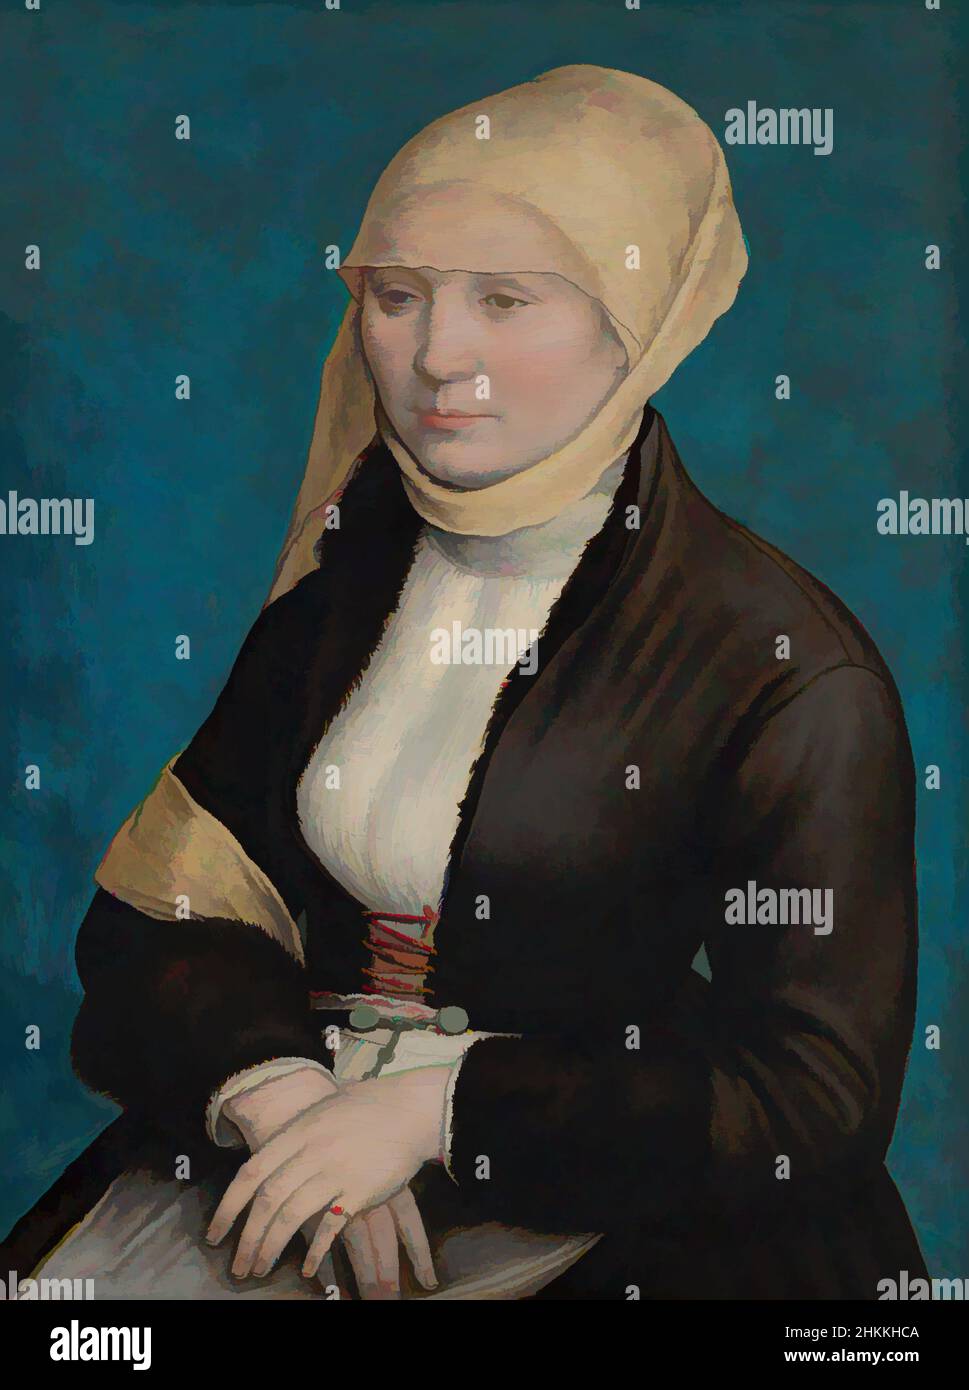 Kunst inspiriert von Porträt einer süddeutschen Frau, Hans Holbein de Jonge, früher zugeschrieben, c.. 1520 - 1525, Classic Works modernisiert von Artotop mit einem Schuss Moderne. Formen, Farbe und Wert, auffällige visuelle Wirkung auf Kunst. Emotionen durch Freiheit von Kunstwerken auf zeitgemäße Weise. Eine zeitlose Botschaft, die eine wild kreative neue Richtung verfolgt. Künstler, die sich dem digitalen Medium zuwenden und die Artotop NFT erschaffen Stockfoto